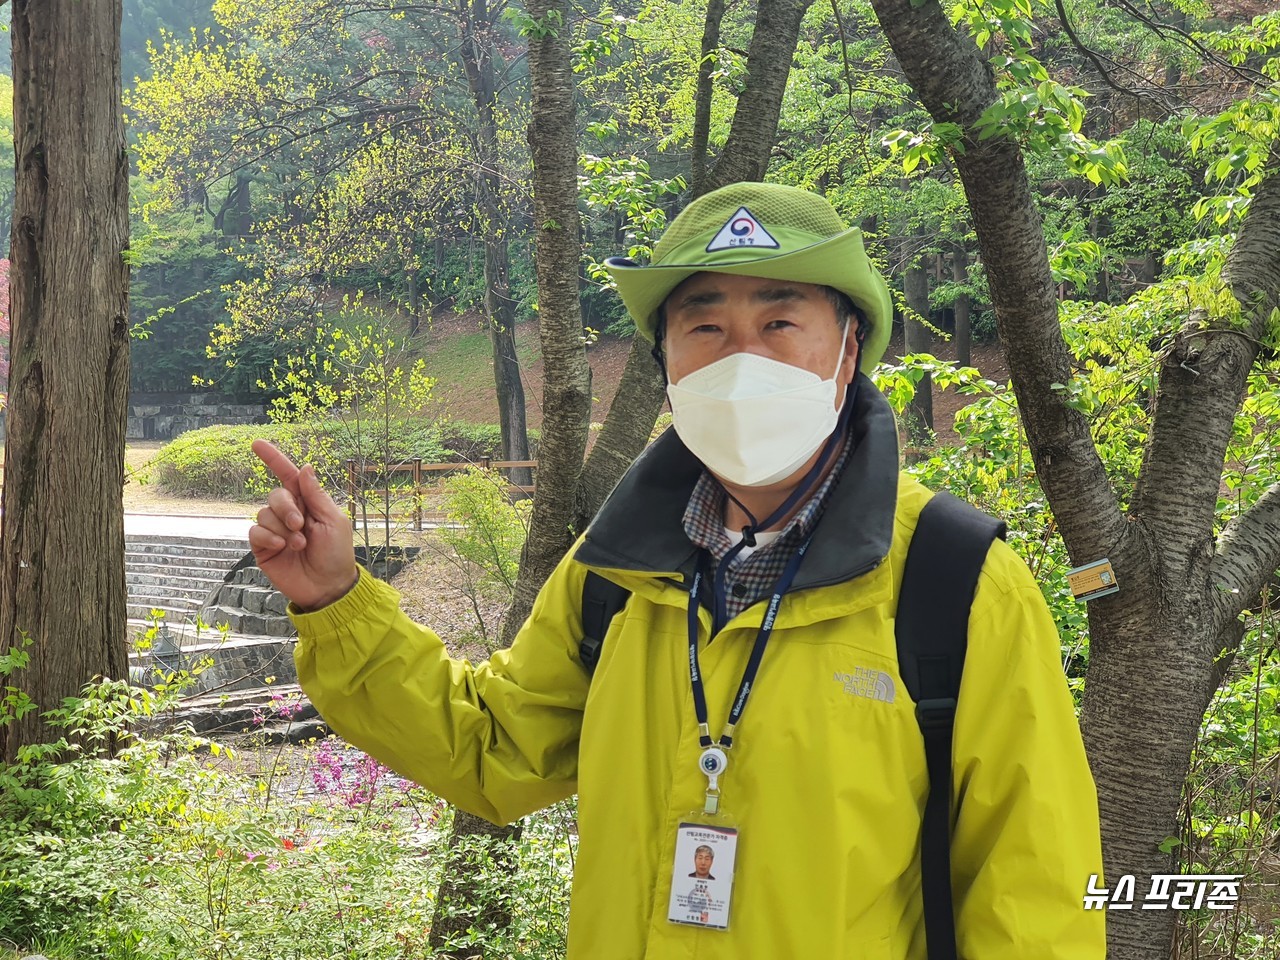 안복현 숲해설가가 17일 오전 9시 대전 보문산 사정공원 숲길에서 숲해설 프로그램을 바탕으로 시민에게 흥미있는 스토리텔링으로 보문산에 대한 이야기를 들려주고 있다./ⓒ이현식 기자